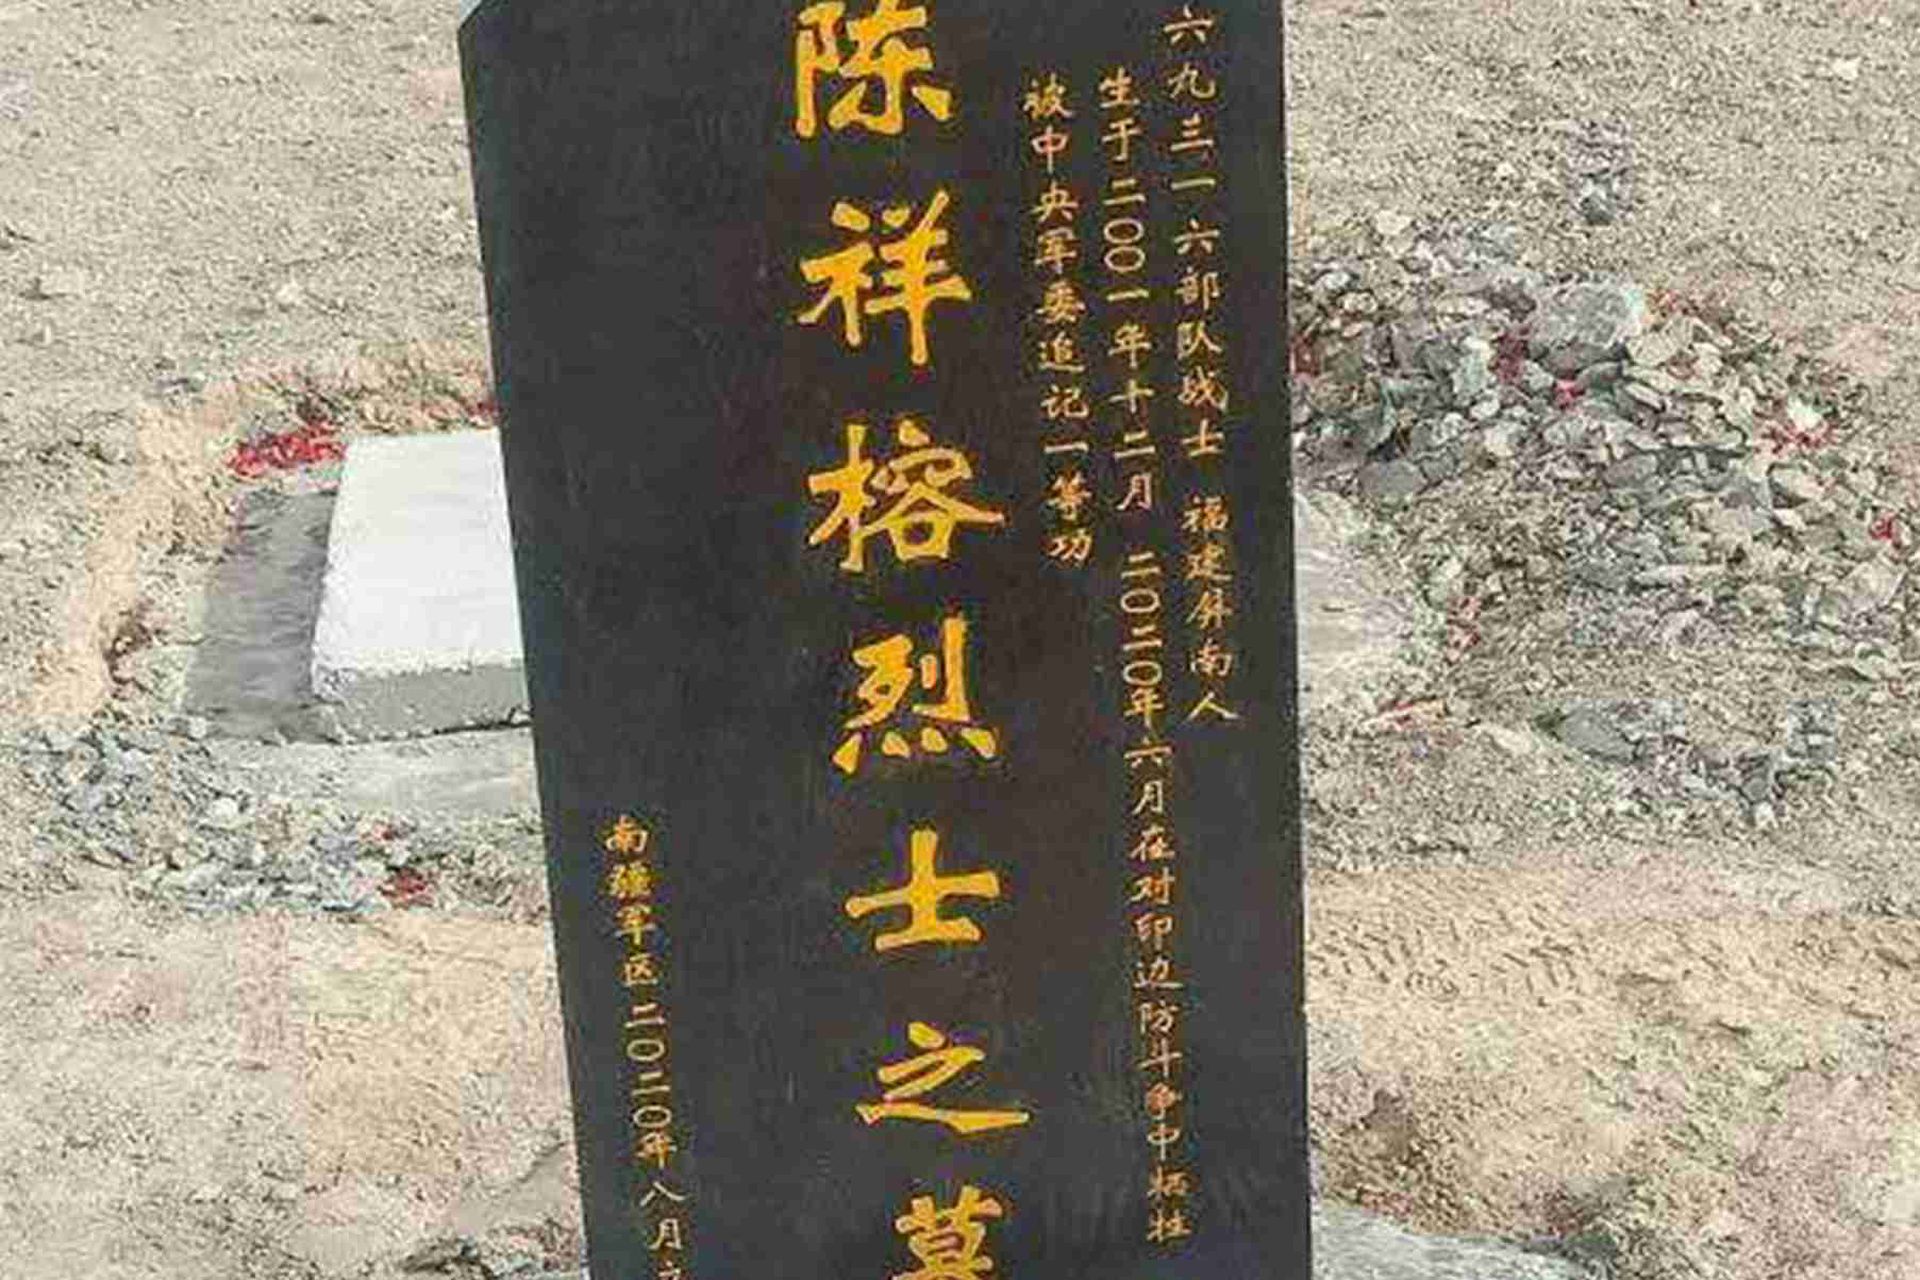 陈祥榕于2020年6月死亡。图为陈祥榕墓碑。（微博@鼎盛沙龙 ）